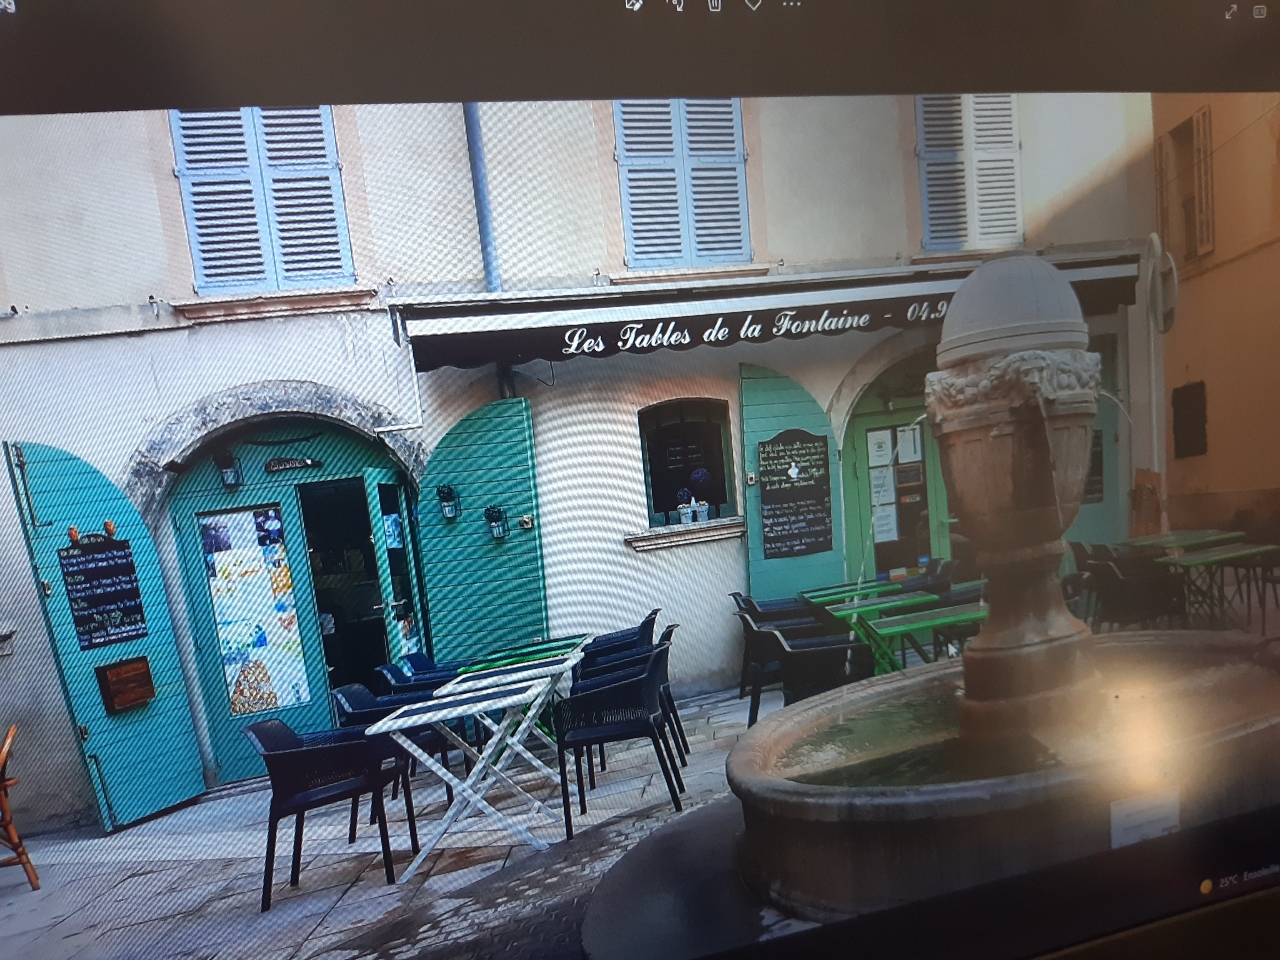 Vends fond de commerce, restauration traditionnelle, emplacement très agréable et calme, rue piétonne.  Dans le vieux centre de Toulon. Vente géré par une agence FAI -

https://www.google.com/maps/place/Pl.+Gustave+Lambert,+83000+Toulon/@43.1212611,5.9295092,17z/data=!3m1!4b1!4m5!3m4!1s0x12c91b0dbde0a8ad:0x3f8ad6d2fe5e53b3!8m2!3d43.1212611!4d5.9316979

Propriétaire mairie de Toulon, municipalité très arrangeante et disponible pour le développement du centre-ville. 
Capacité intérieure 28 places ainsi que 24 à 30 places extérieures suivant le droit de terrasse autorisé par la mairie. Réserve de 50 m carré à l’étage compris dans le bail. Etablissement très bien entretenu, prêt à être exploité. License boisson grande restauration -Tout le matériel mis en place nécessaire laissé au futur acquéreur. 
https://www.tripadvisor.fr/Restaurant_Review-g187257-d7885793-Reviews-Les_Tables_de_la_Fontaine-Toulon_Var_Provence_Alpes_Cote_d_Azur.html

Photos sur demande de l’intérieur, de la cuisine du bar, ainsi que la terrasse. 
Merci de me contacter, que les personnes sérieuses (disposant au moins de la moitié de l’apport entre 70000 et 85 000 €). Curieux s’abstenir, contact seulement par mail pour d’autres questions.
Aucun document ne sera envoyé ou présenté sans une rencontre sur site. 
lestablesdelafontaine83@gmail.com

Vends fonds de commerce, restauration traditionnelle, emplacement très agréable et calme, rue piétonne.  Dans le vieux centre de Toulon. 

Propriétaire mairie de Toulon, municipalité très arrangeante et disponible pour le développement du centre-ville.  Droit de regard sur futur acquéreur sur le projet proposé – Loyer raisonnable - 

Actuellement géré par 1 couple, 1 apprenti cuisine et deux mi-temps - Pas de personnel à reprendre - 
Capacité intérieure 28 places ainsi que 24 à 30 places extérieures suivant le droit de terrasse autorisé par la mairie. Réserve de 50 m carré à l’étage compris dans le bail. Etablissement très bien entretenu, prêt à être exploité. License boisson grande restauration -Tout le matériel mis en place nécessaire laissé au futur acquéreur. Liste sur demande - 

Photos sur demande : de l’intérieur, de la cuisine du bar, ainsi que la terrasse. 
PHOTOS ACTUELLES TROP LOURDES .

Merci de me contacter, que les personnes sérieuses. Curieux s’abstenir, Prix négociable – pour le moment pas d’agence donc 8 % de frais en moins. 
Contact seulement par mail pour d’autres questions.
Aucun document ne sera envoyé ou présenté sans une rencontre sur site. 
lestablesdelafontaine83@gmail.com